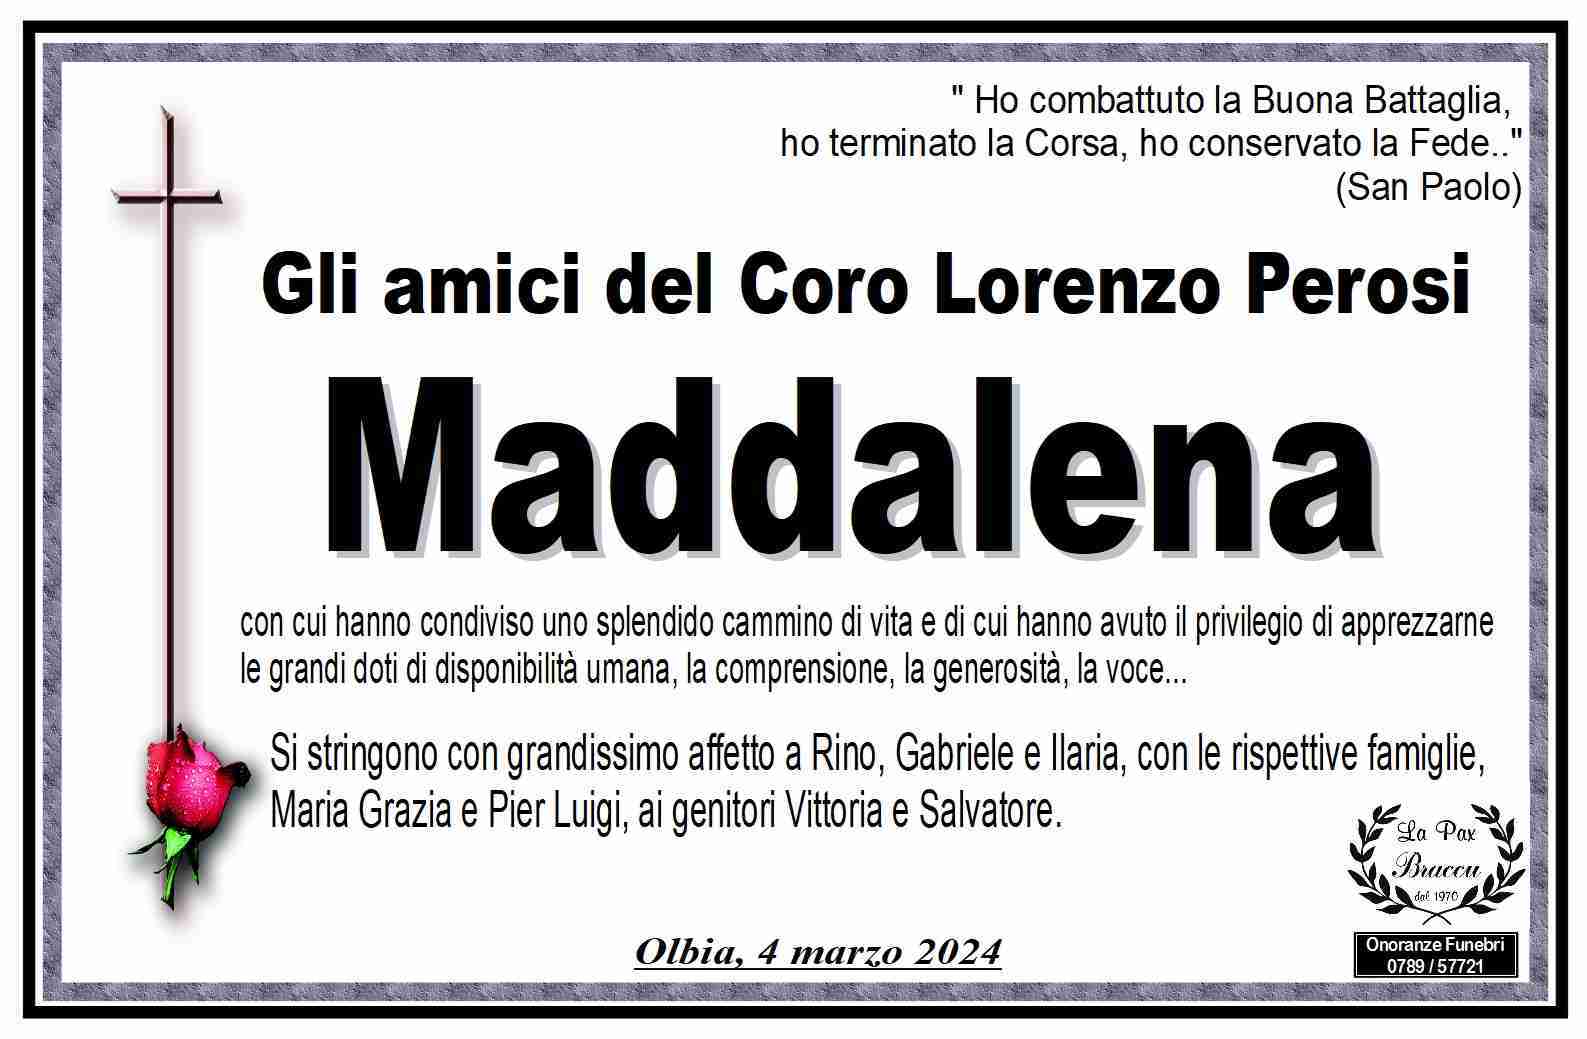 Maddalena Garau